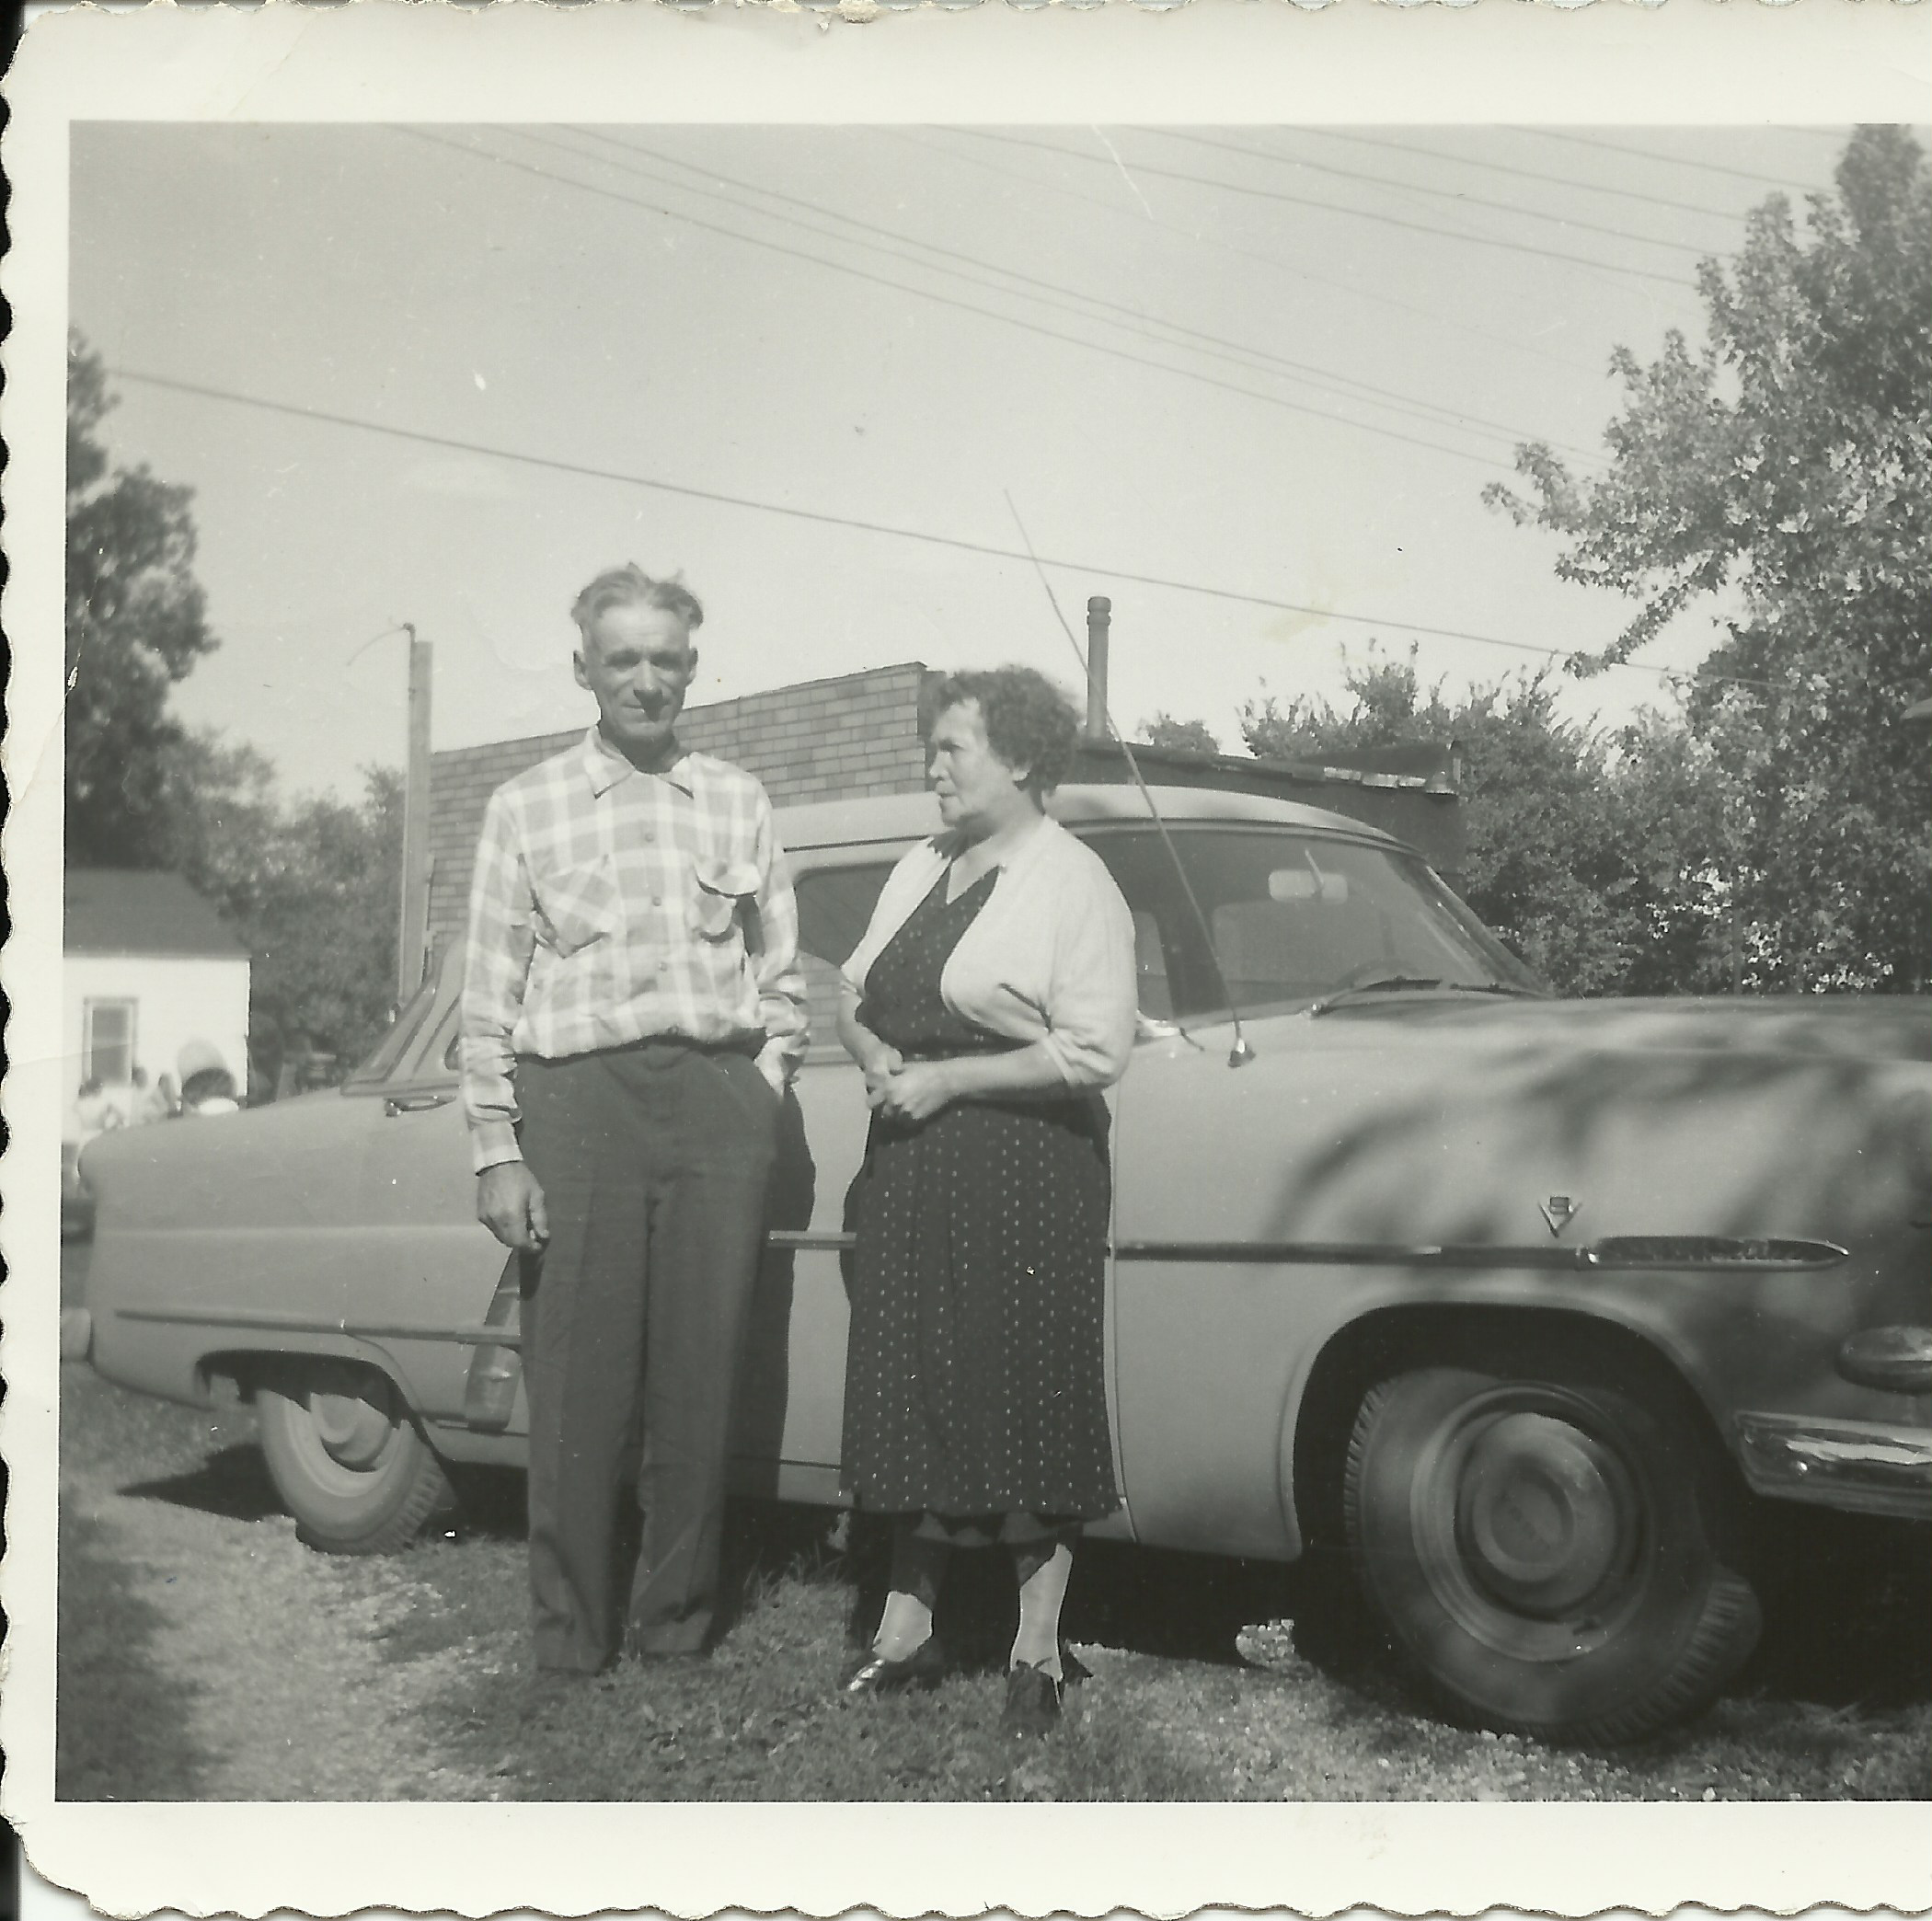 Grandpa & Grandma Schindele, 1955